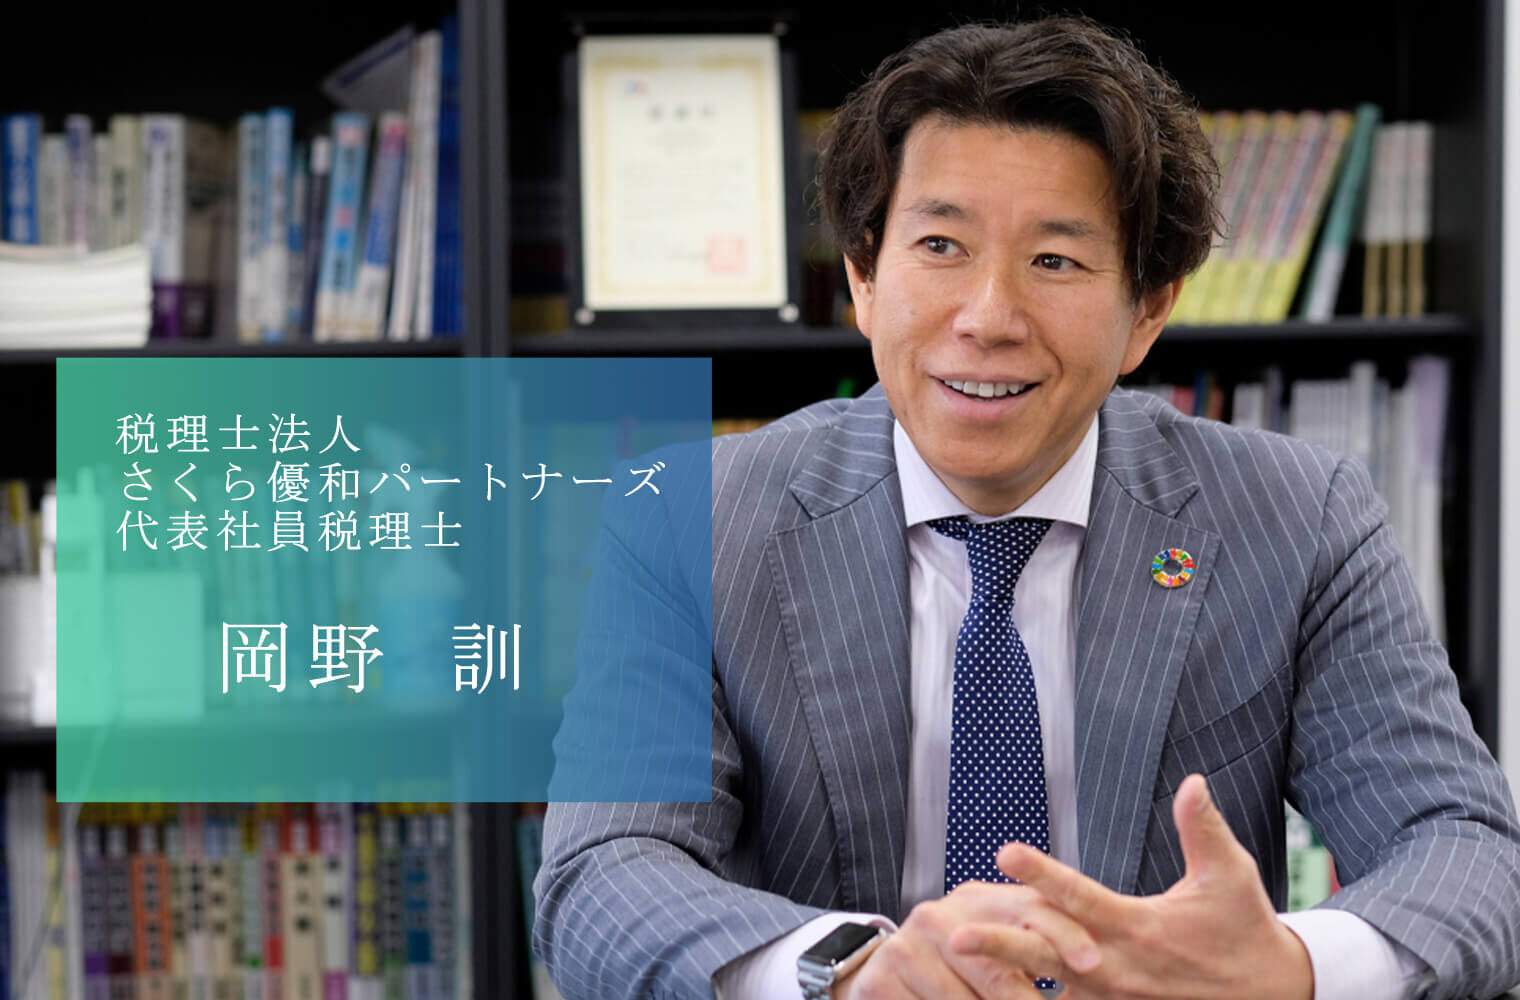 目指すは「九州No.1のシンクタンク」 熊本の経済を下支えする九州トップクラスの税理士法人 さくら優和パートナーズの岡野代表